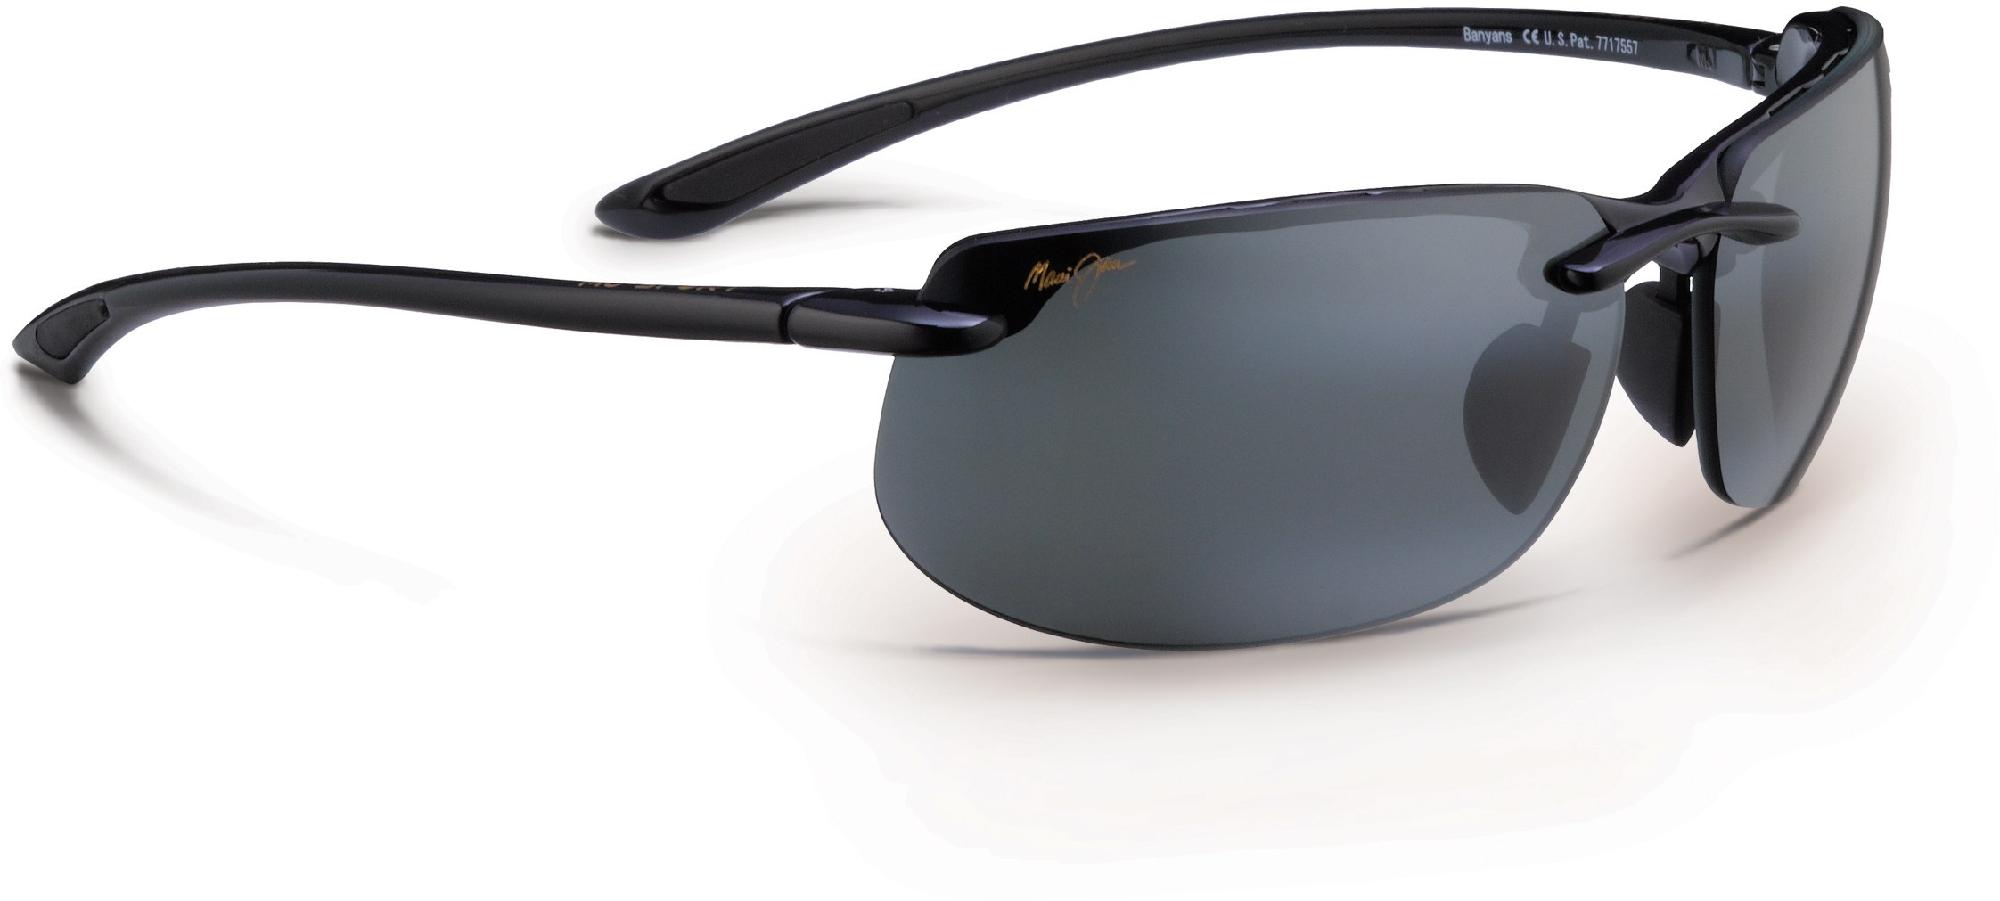 цена Поляризованные солнцезащитные очки Banyans Maui Jim, черный